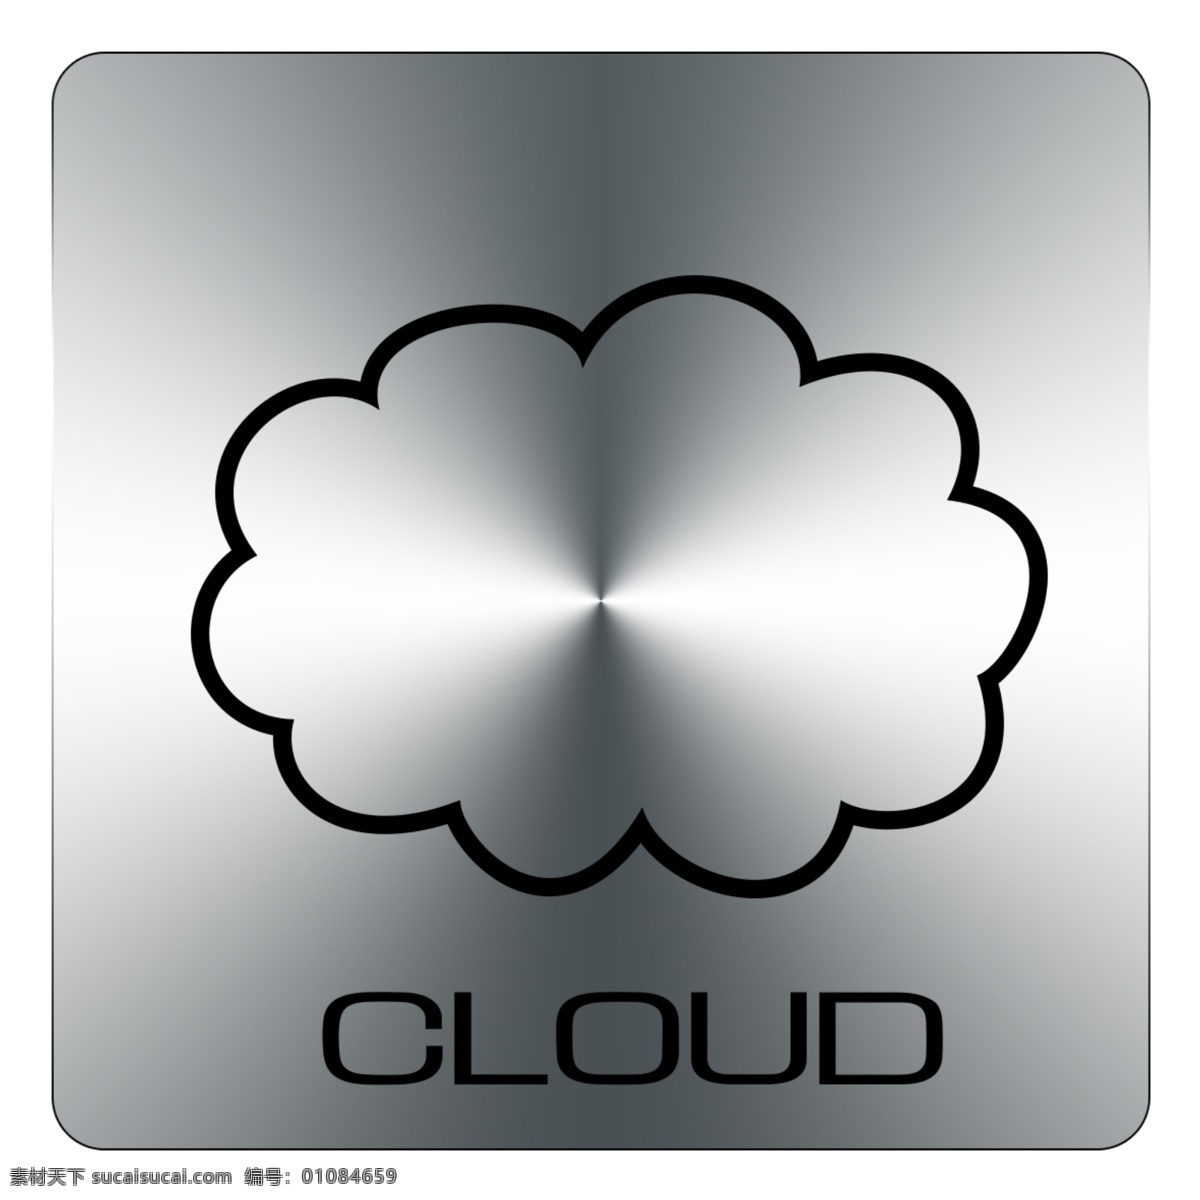 云端 金属渐变 线性边框 logo 矢量 圆角矩形 cloud 原创 标志图标 其他图标